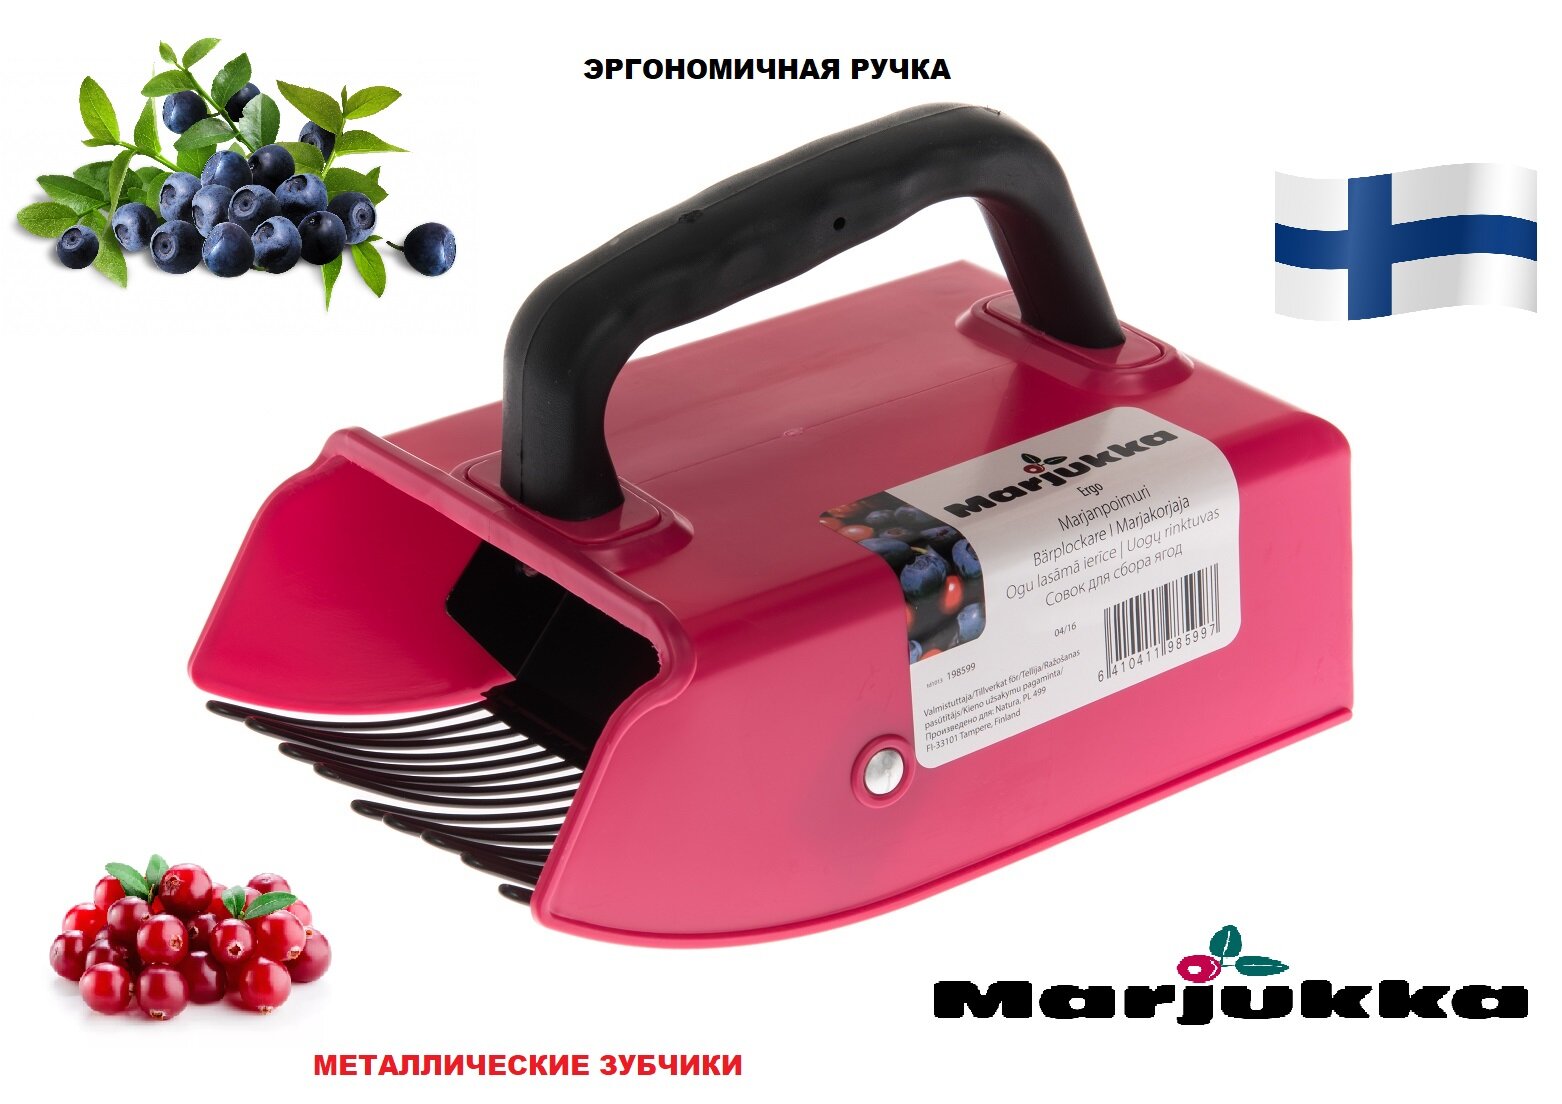 Плодосборник -комбайн для сбора ягод с металлическими зубчиками и эргономичной ручкой, MARJUKKA